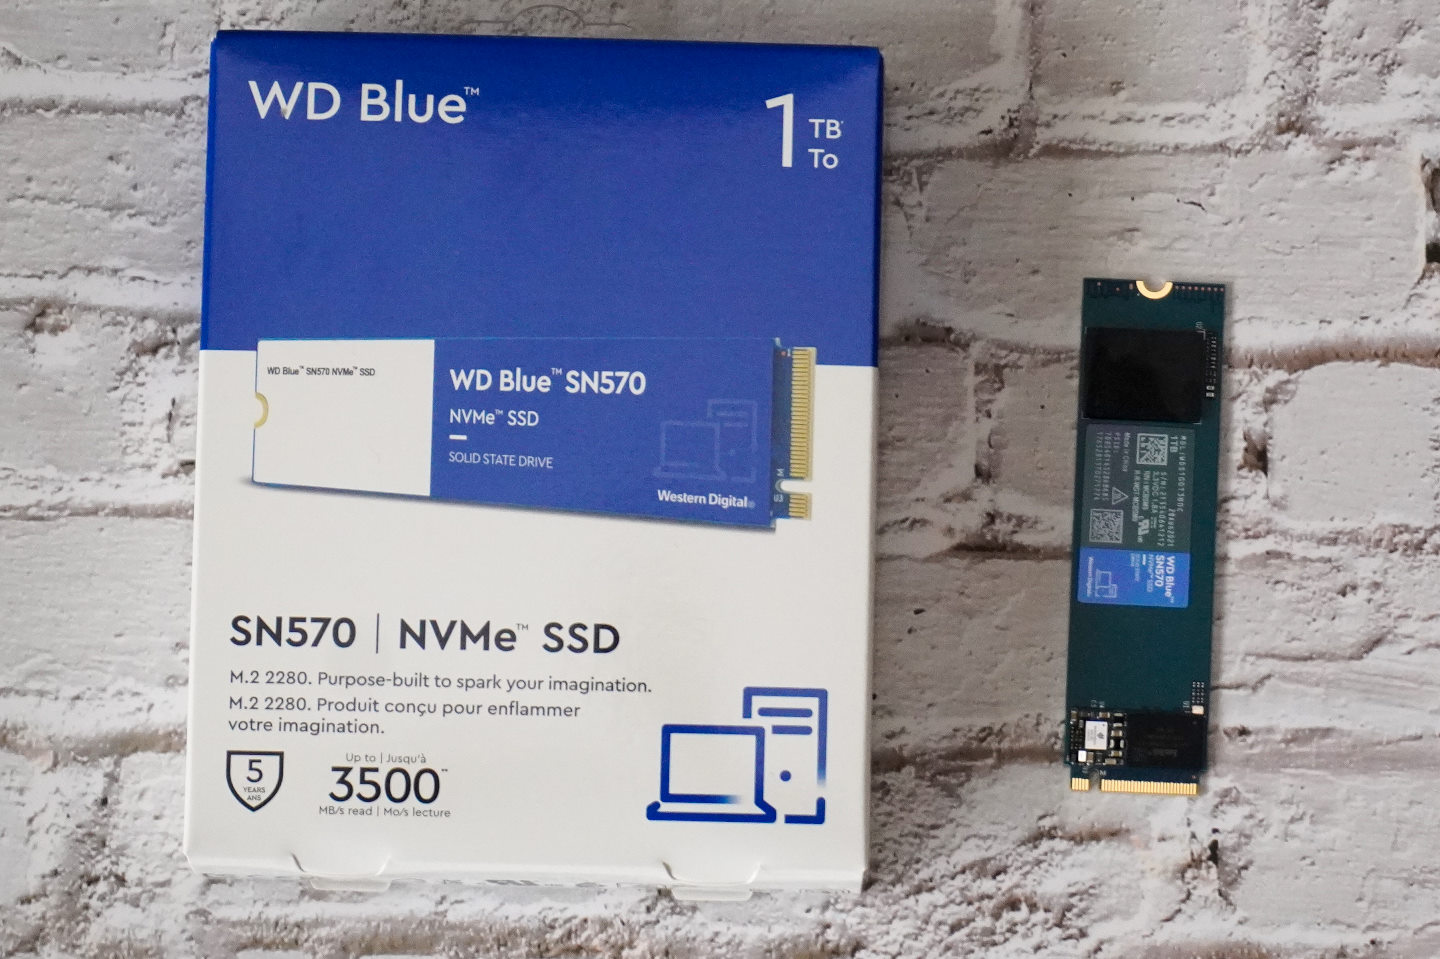 WD Blue SN570 NVMe SSD為Western Digital最新主流級固態硬碟。